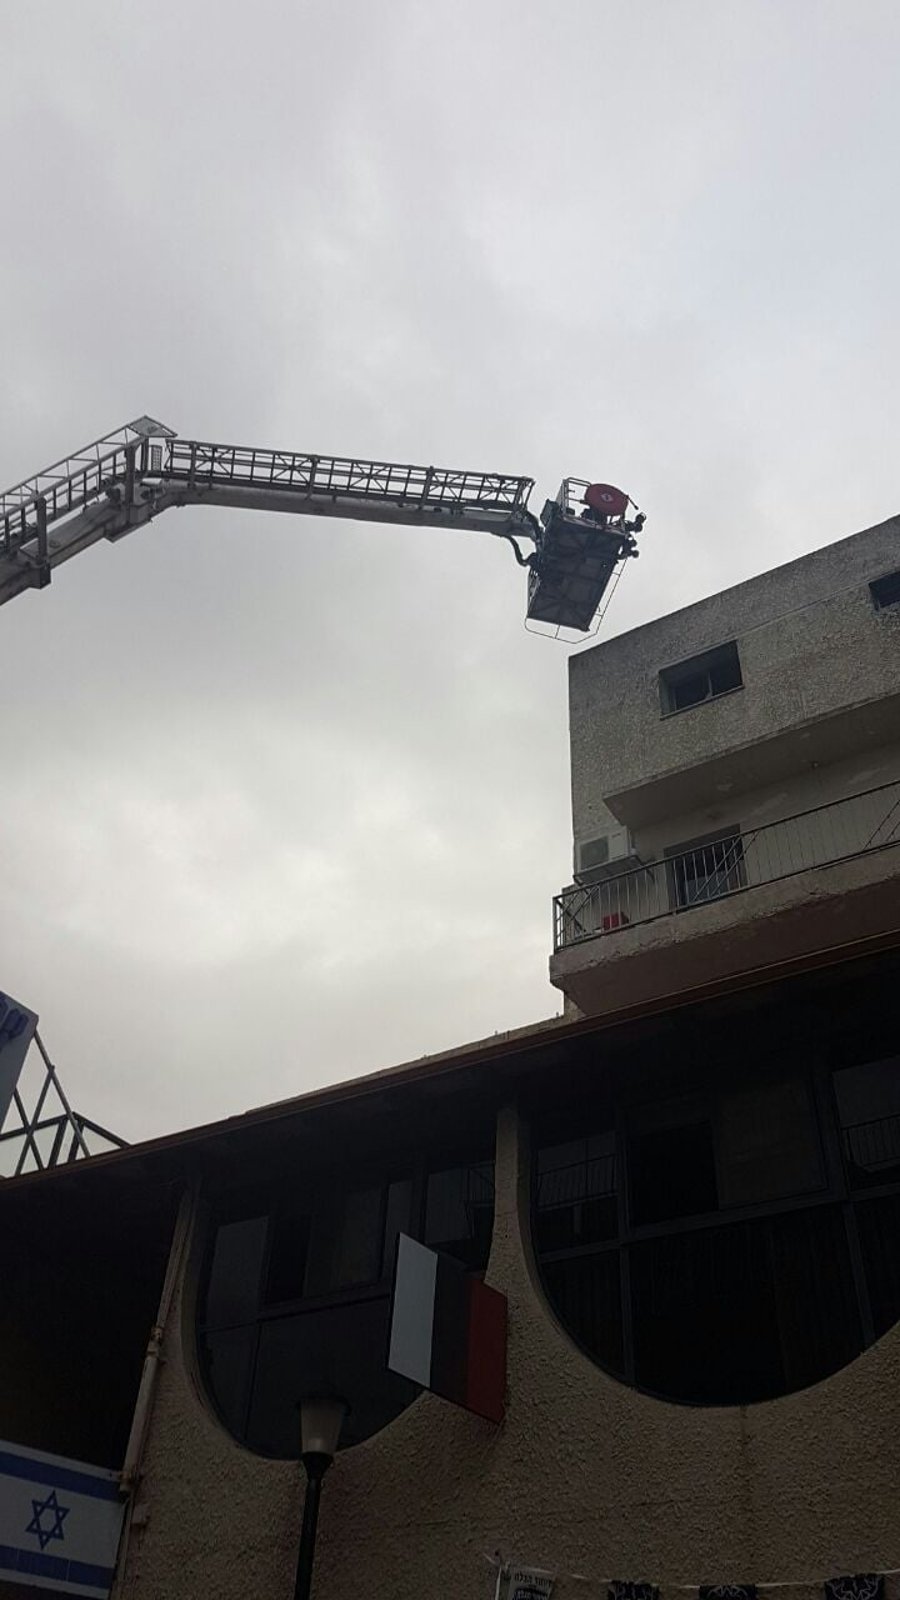 שריפה פרצה במלון 'המצודה' בצפת; 16 נפצעו קל ובינוני